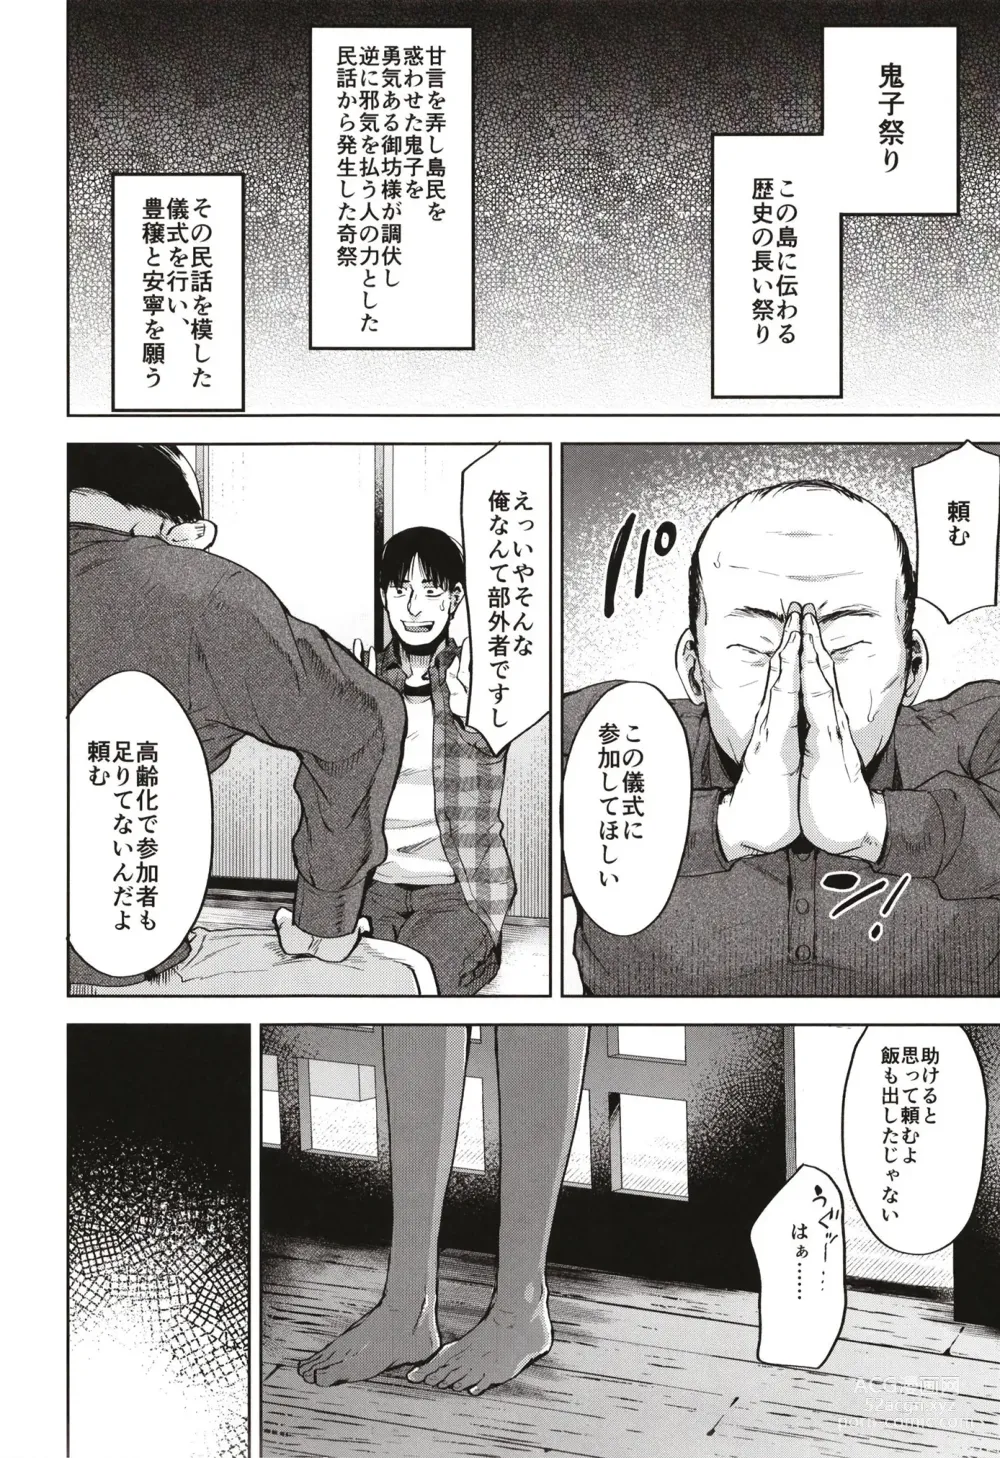 Page 8 of doujinshi Onigo matsurinoyoru